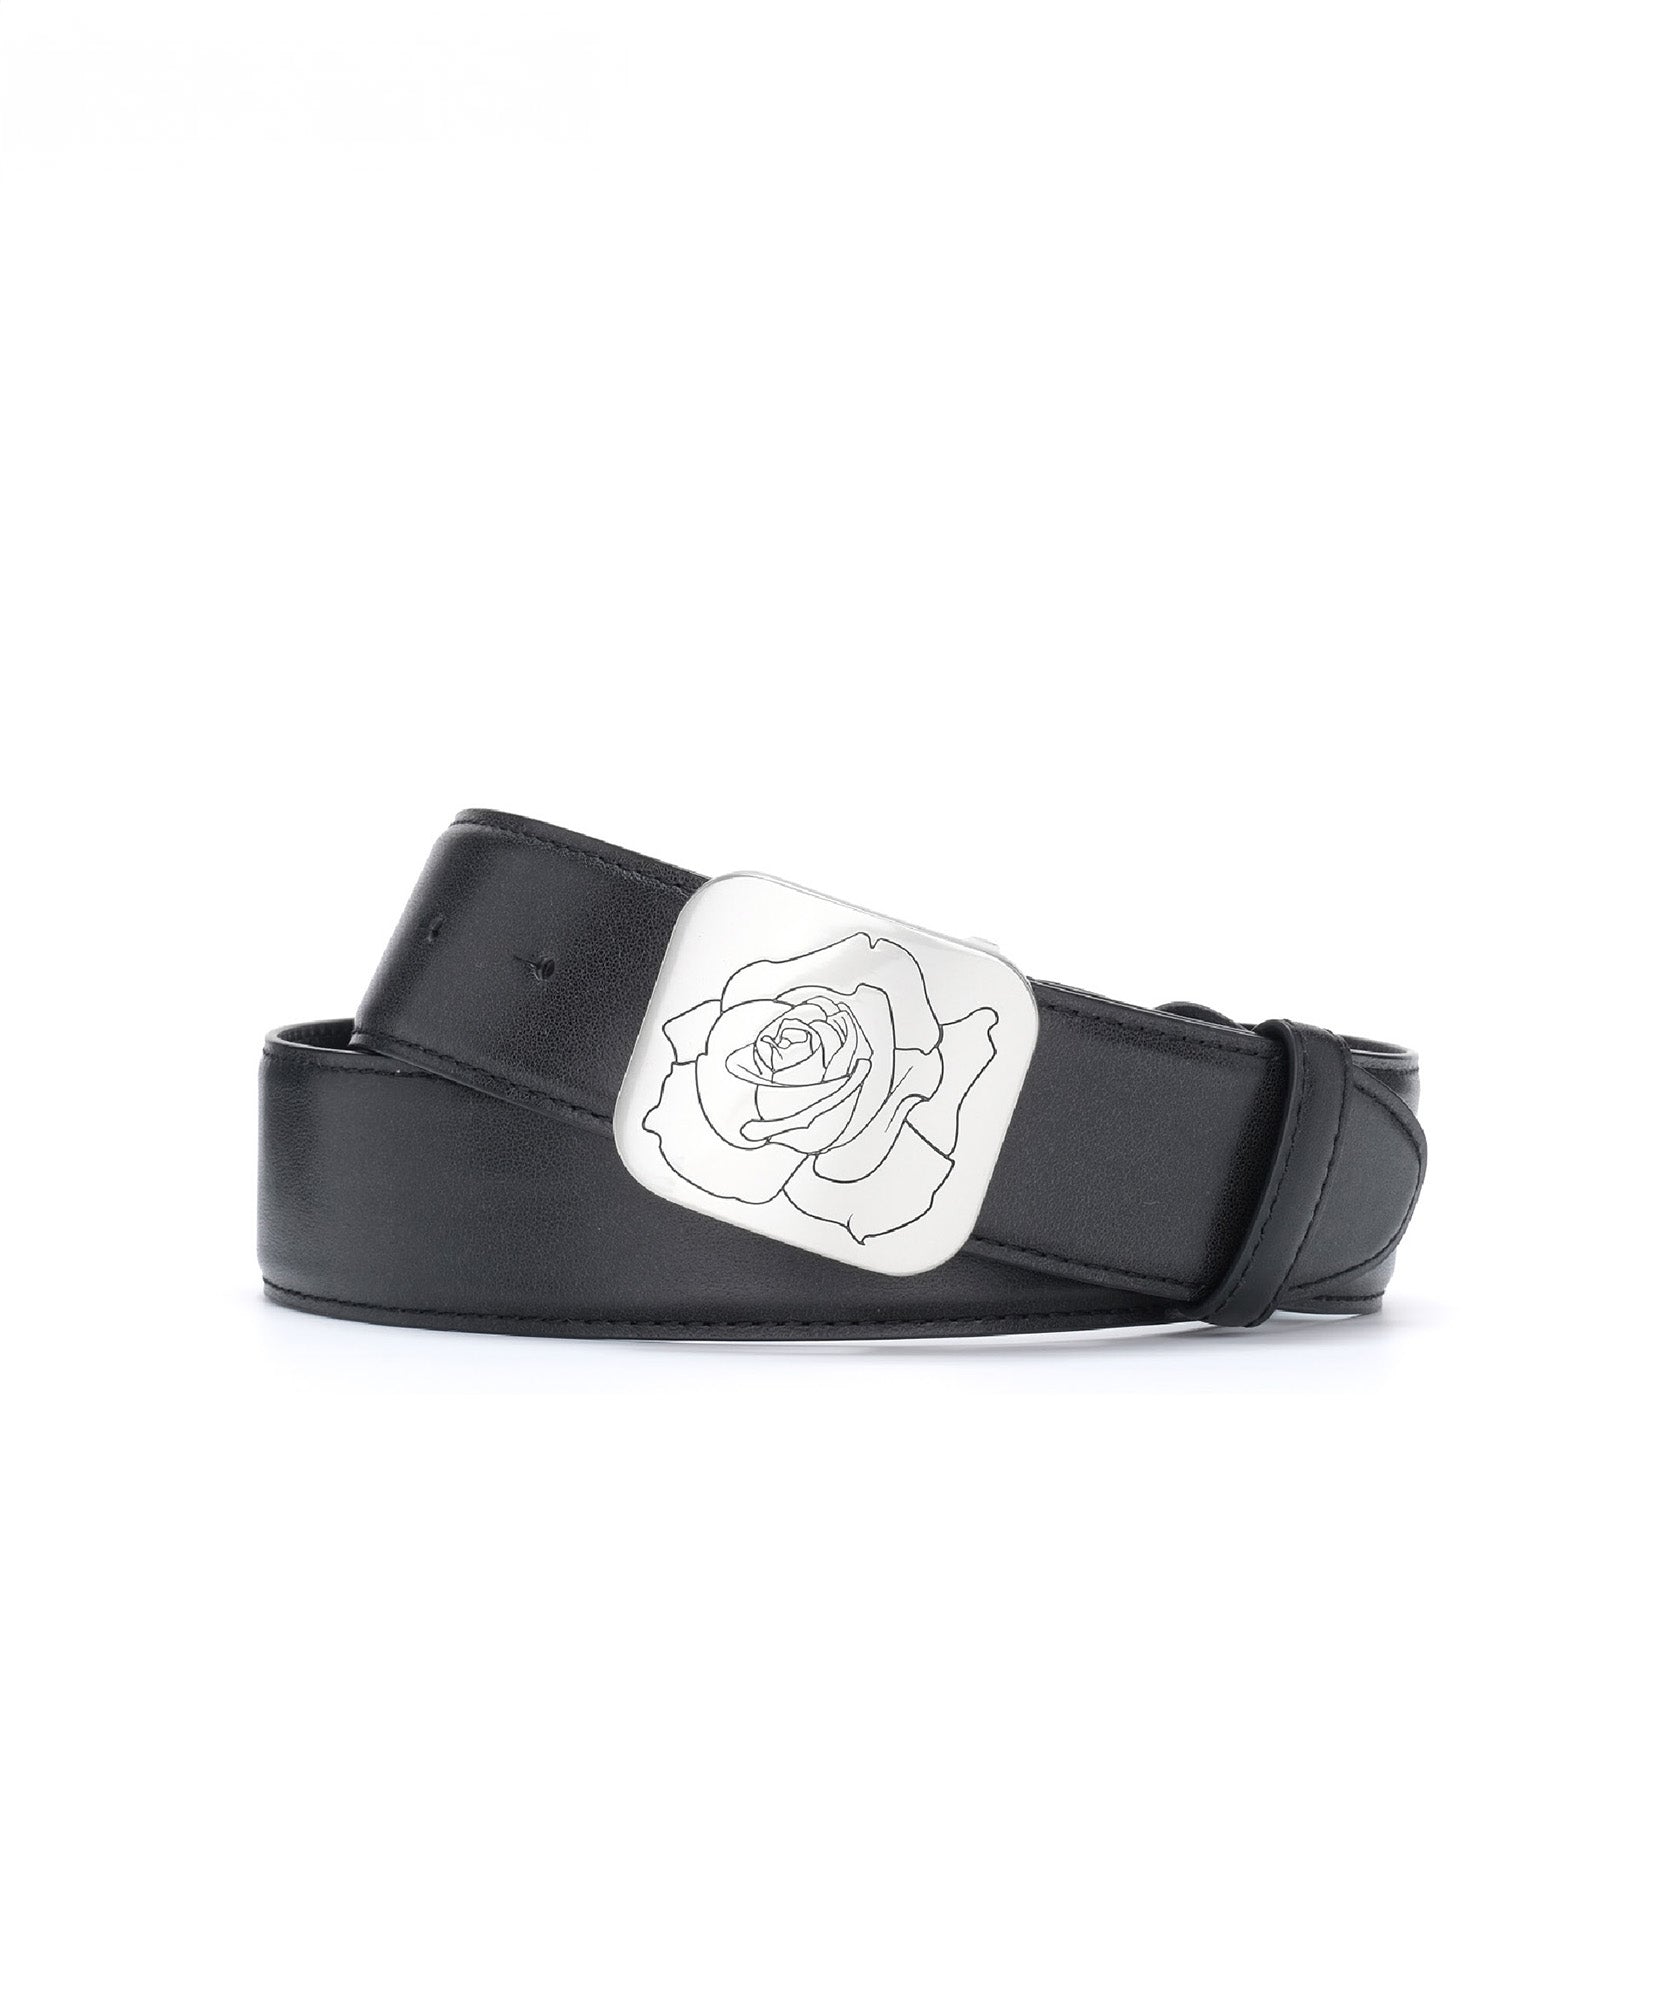 Rose engraved belt